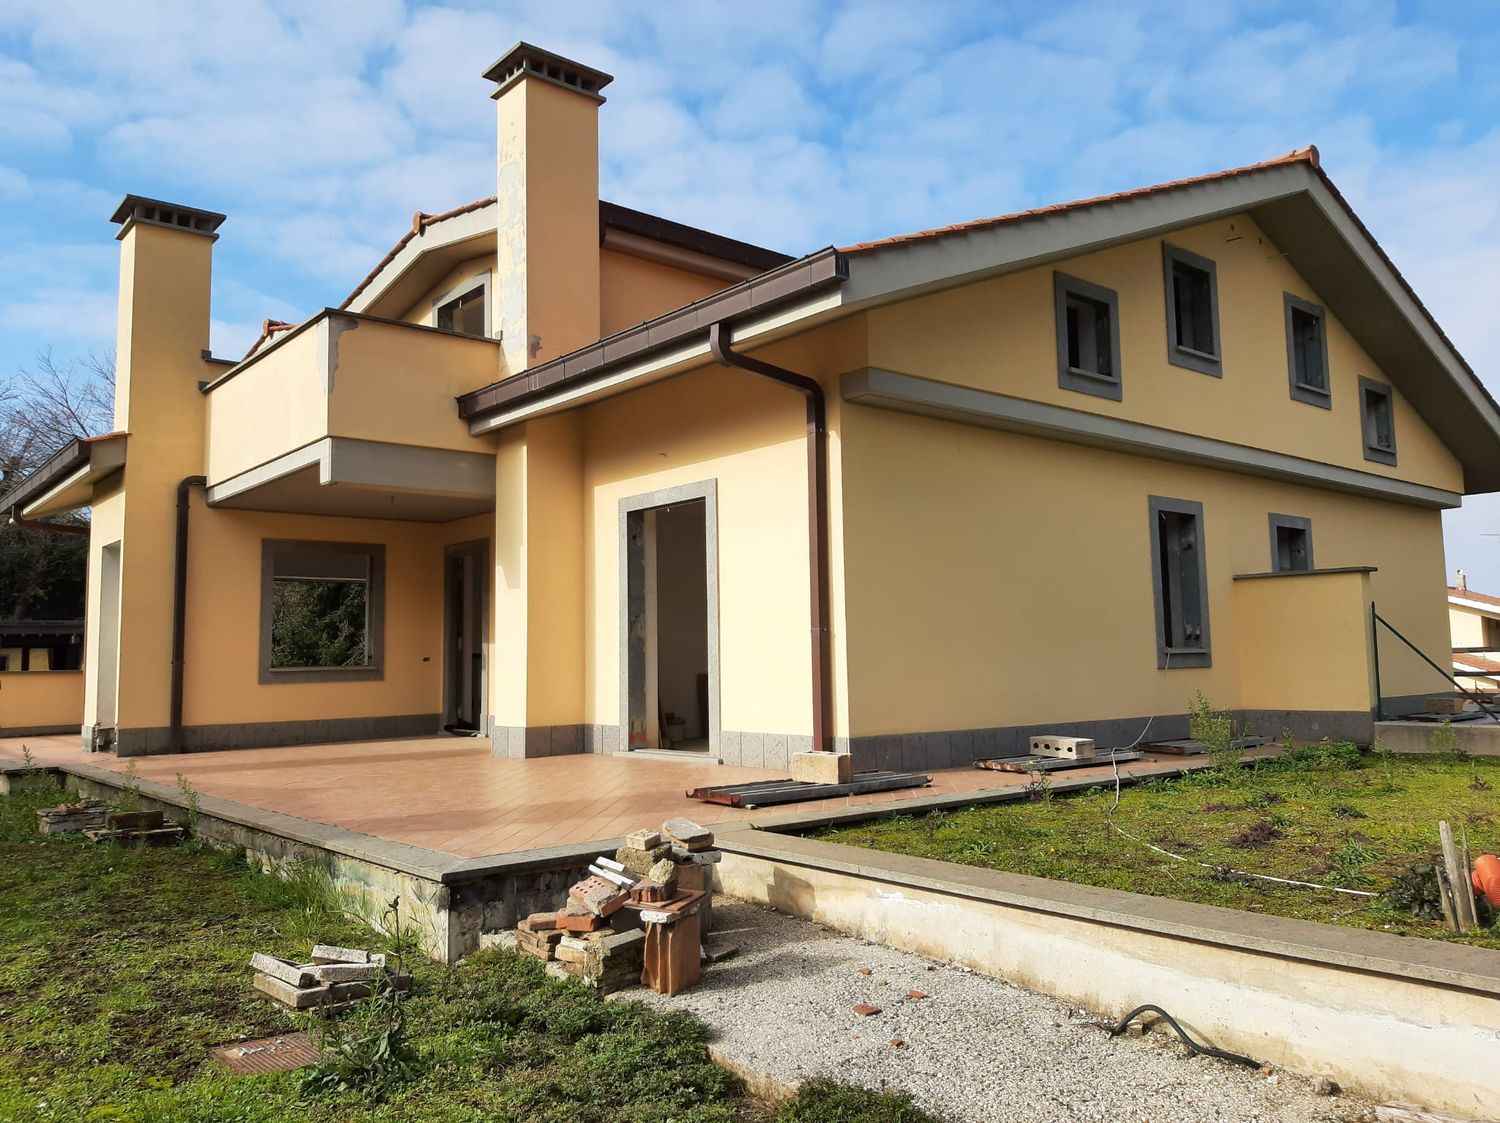 Villa Bifamiliare in vendita a Rocca di Papa, 6 locali, prezzo € 430.000 | CambioCasa.it